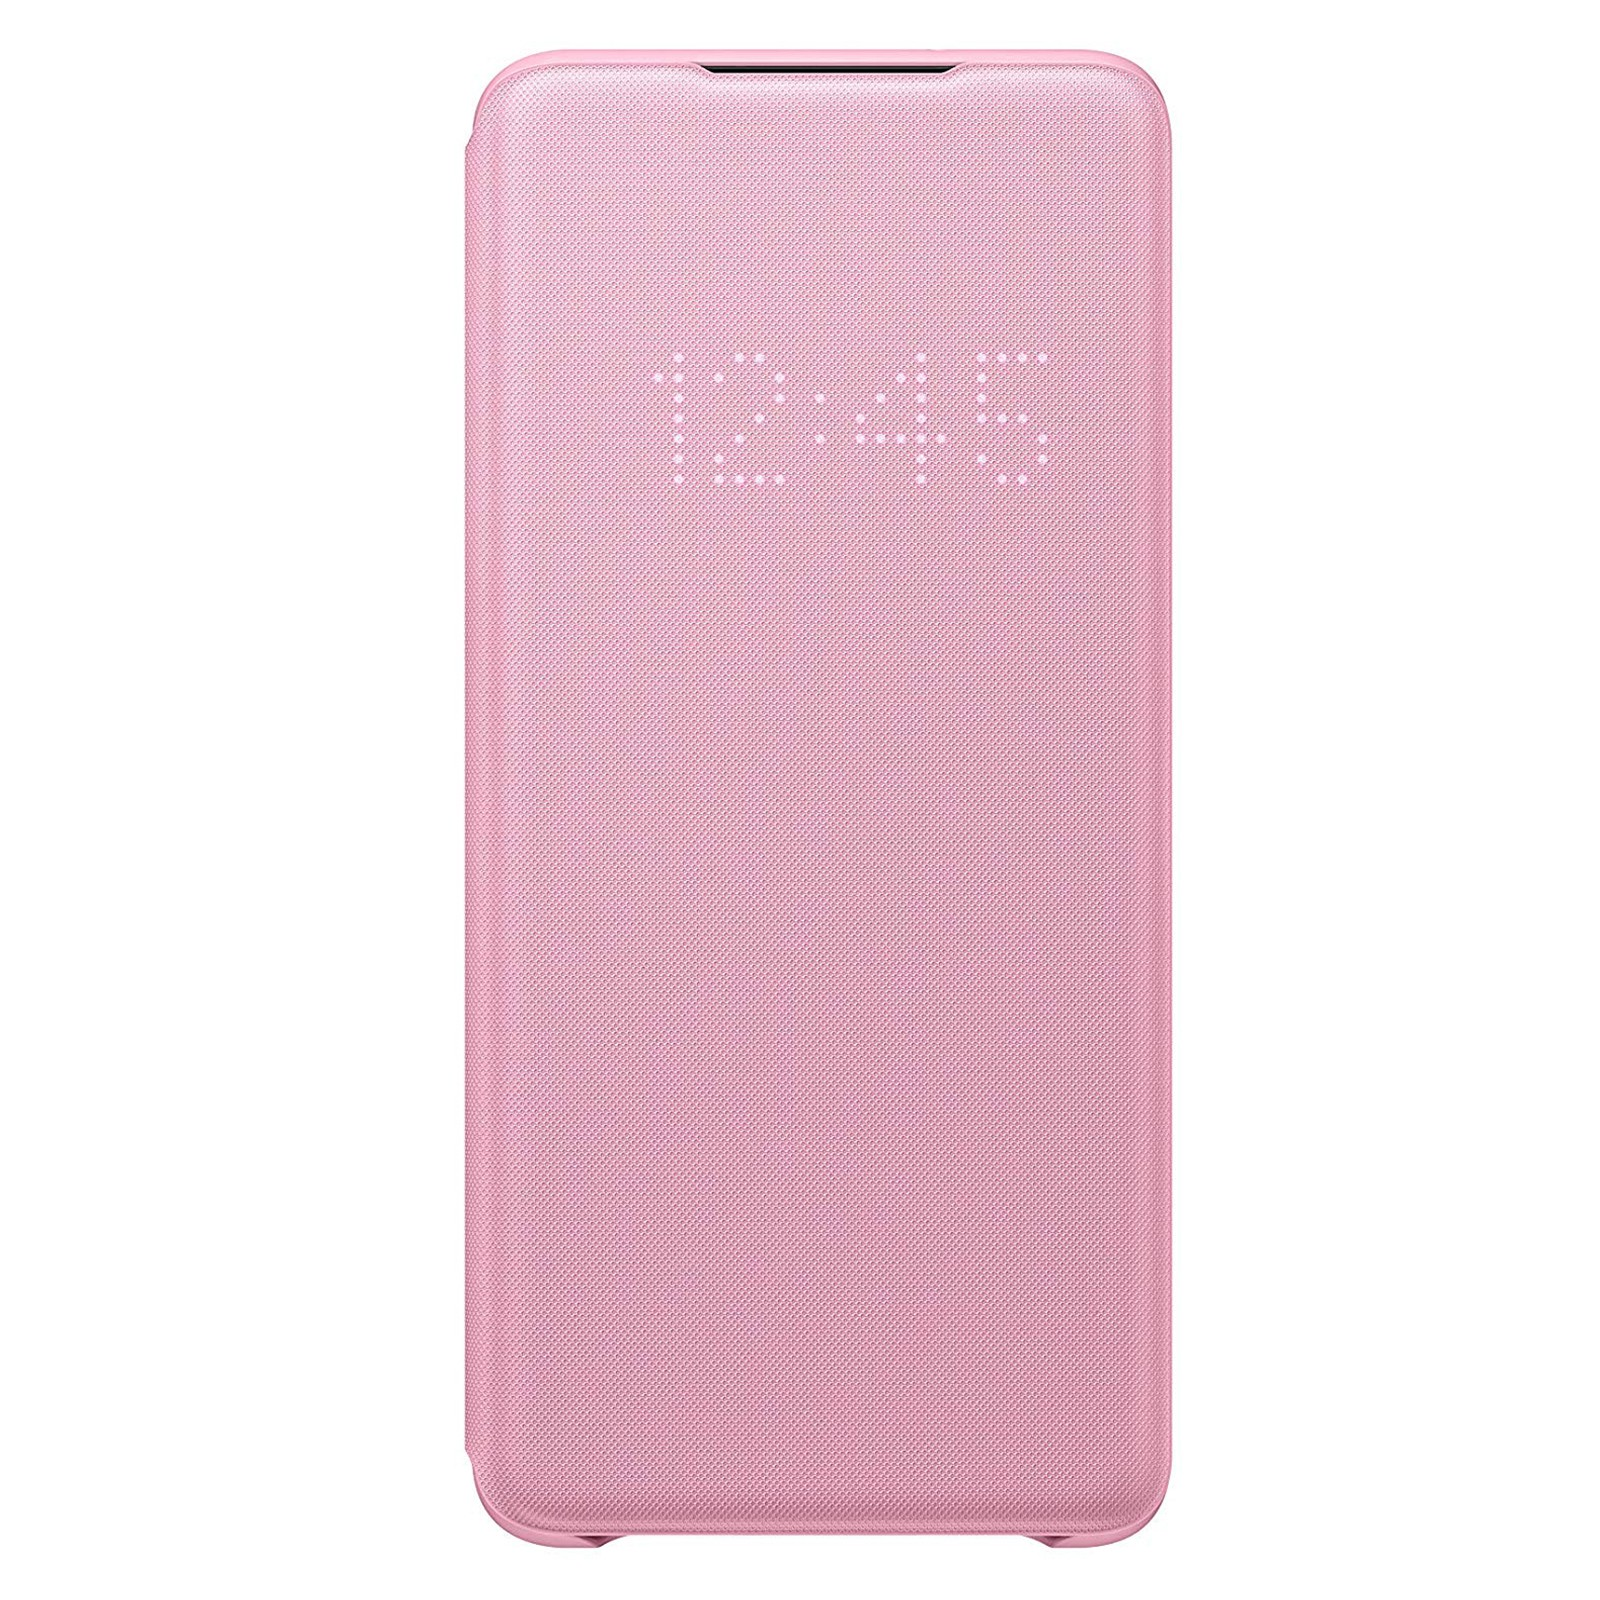 SAMSUNG EF-NG985 LED VIEW COVER Pink GALAXY Bookcover, PINK, S20+ S20+, Samsung, Galaxy